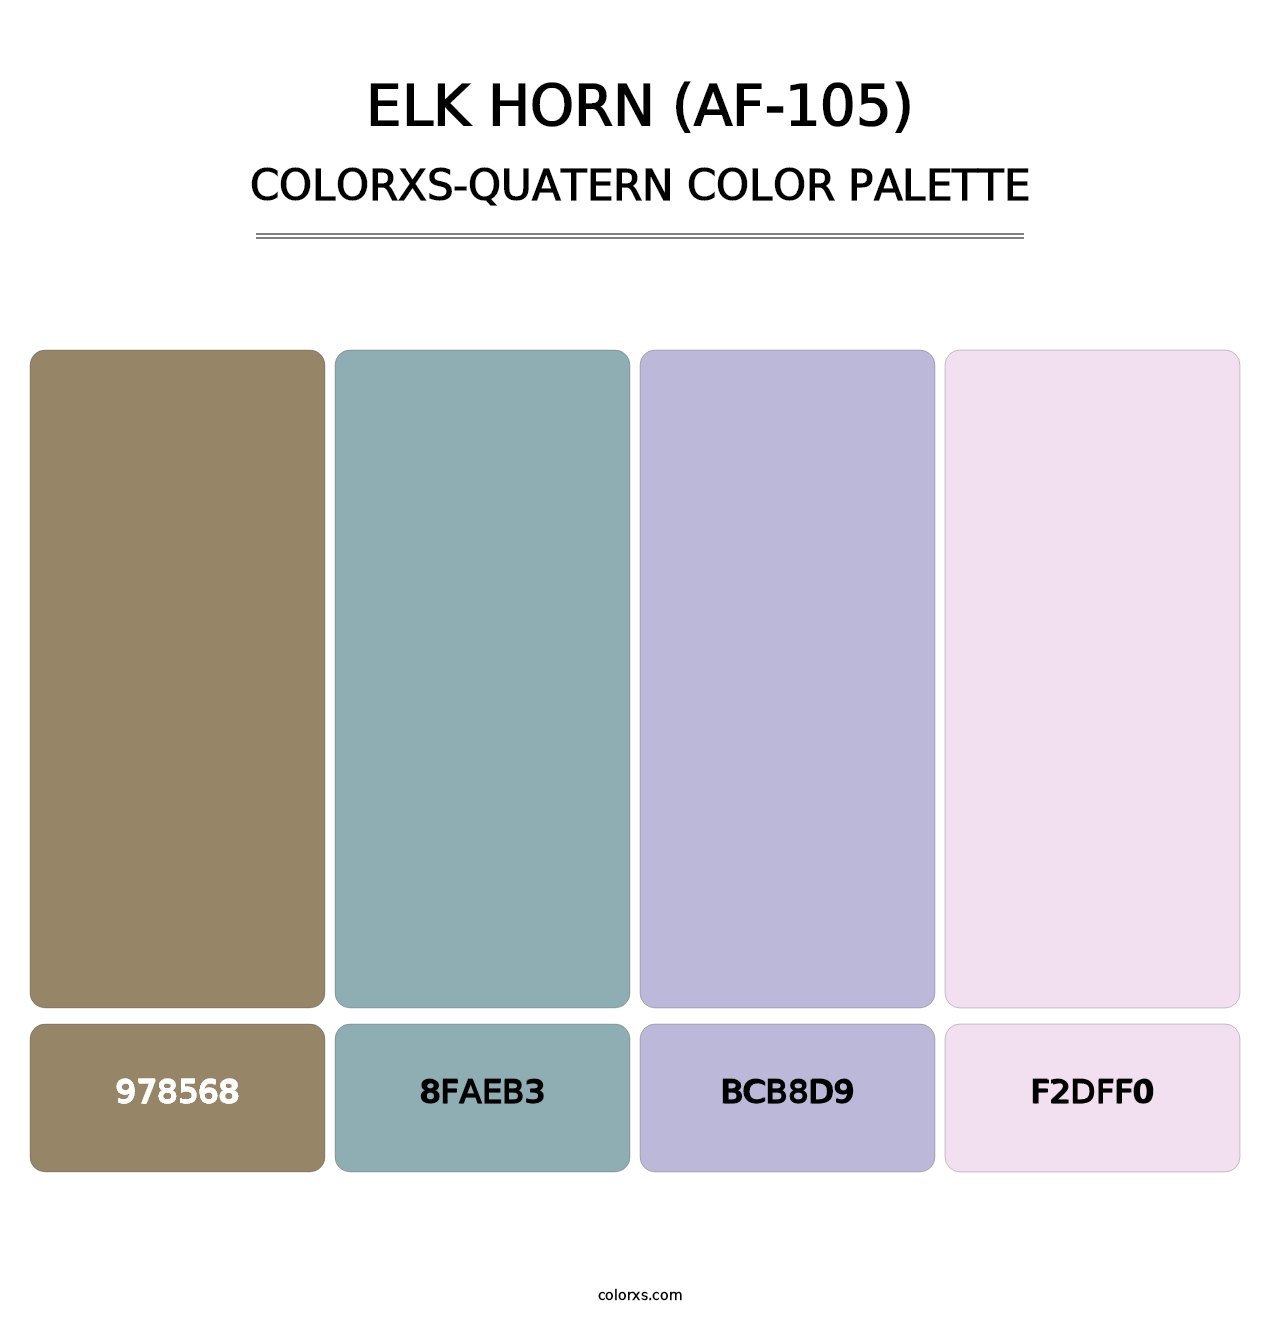 Elk Horn (AF-105) - Colorxs Quatern Palette